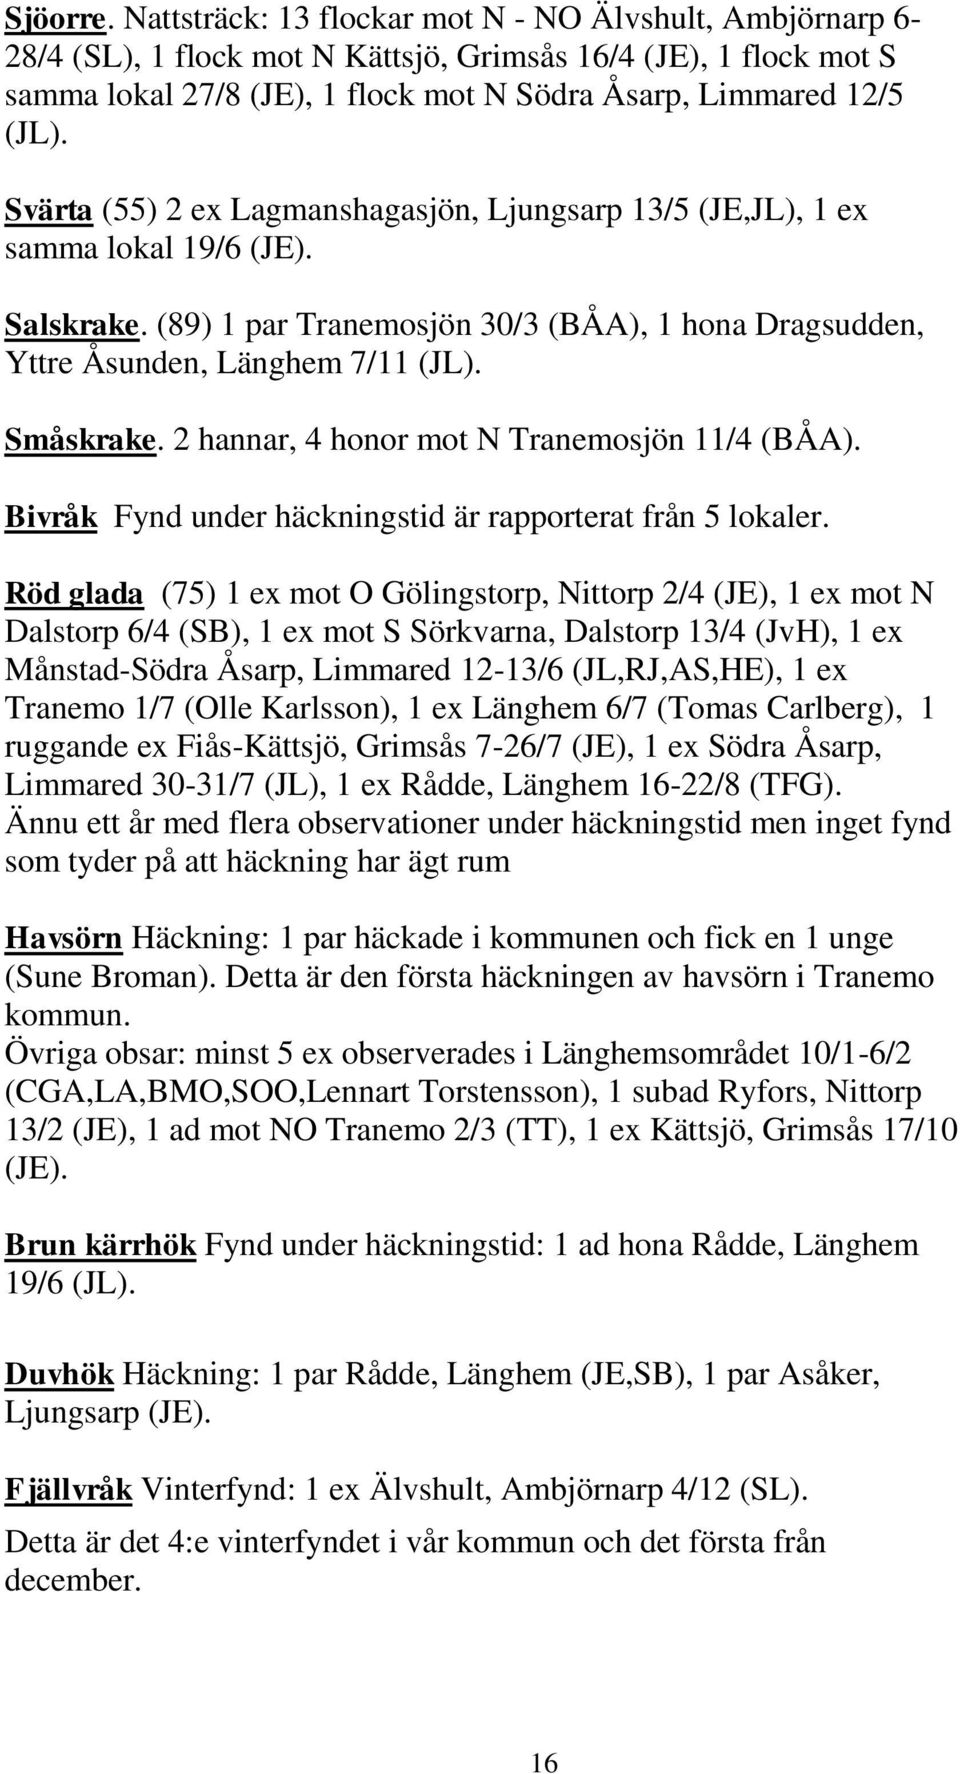 Svärta (55) 2 ex Lagmanshagasjön, Ljungsarp 13/5 (JE,JL), 1 ex samma lokal 19/6 (JE). Salskrake. (89) 1 par Tranemosjön 30/3 (BÅA), 1 hona Dragsudden, Yttre Åsunden, Länghem 7/11 (JL). Småskrake.